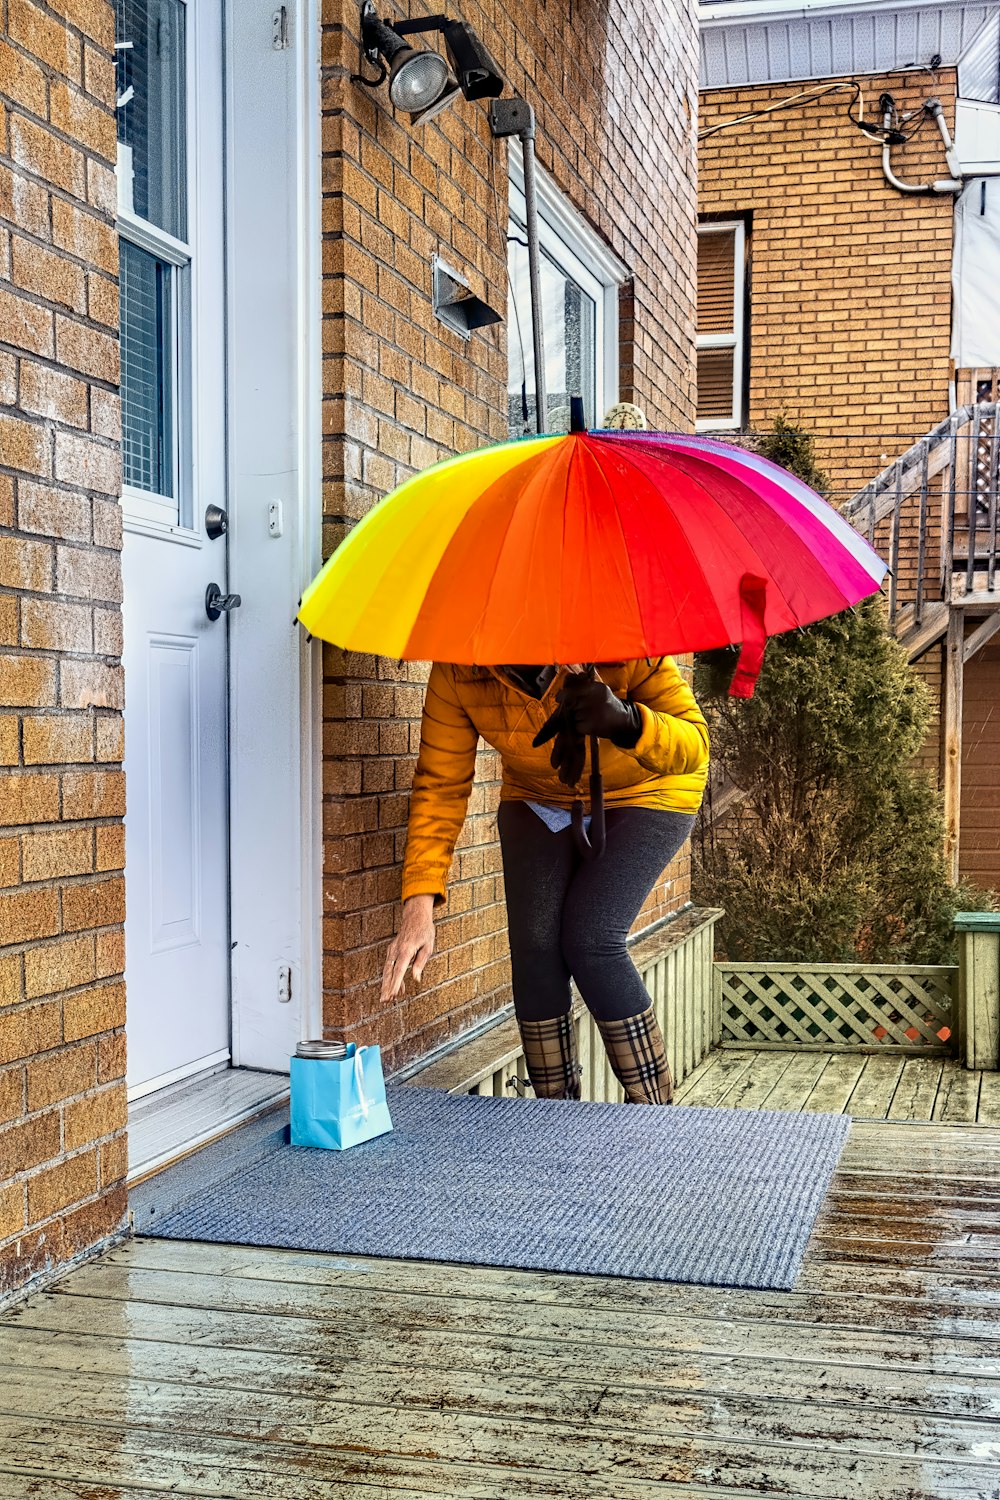 A neighbor running an errand for a next-door friend | Photo from Unsplash